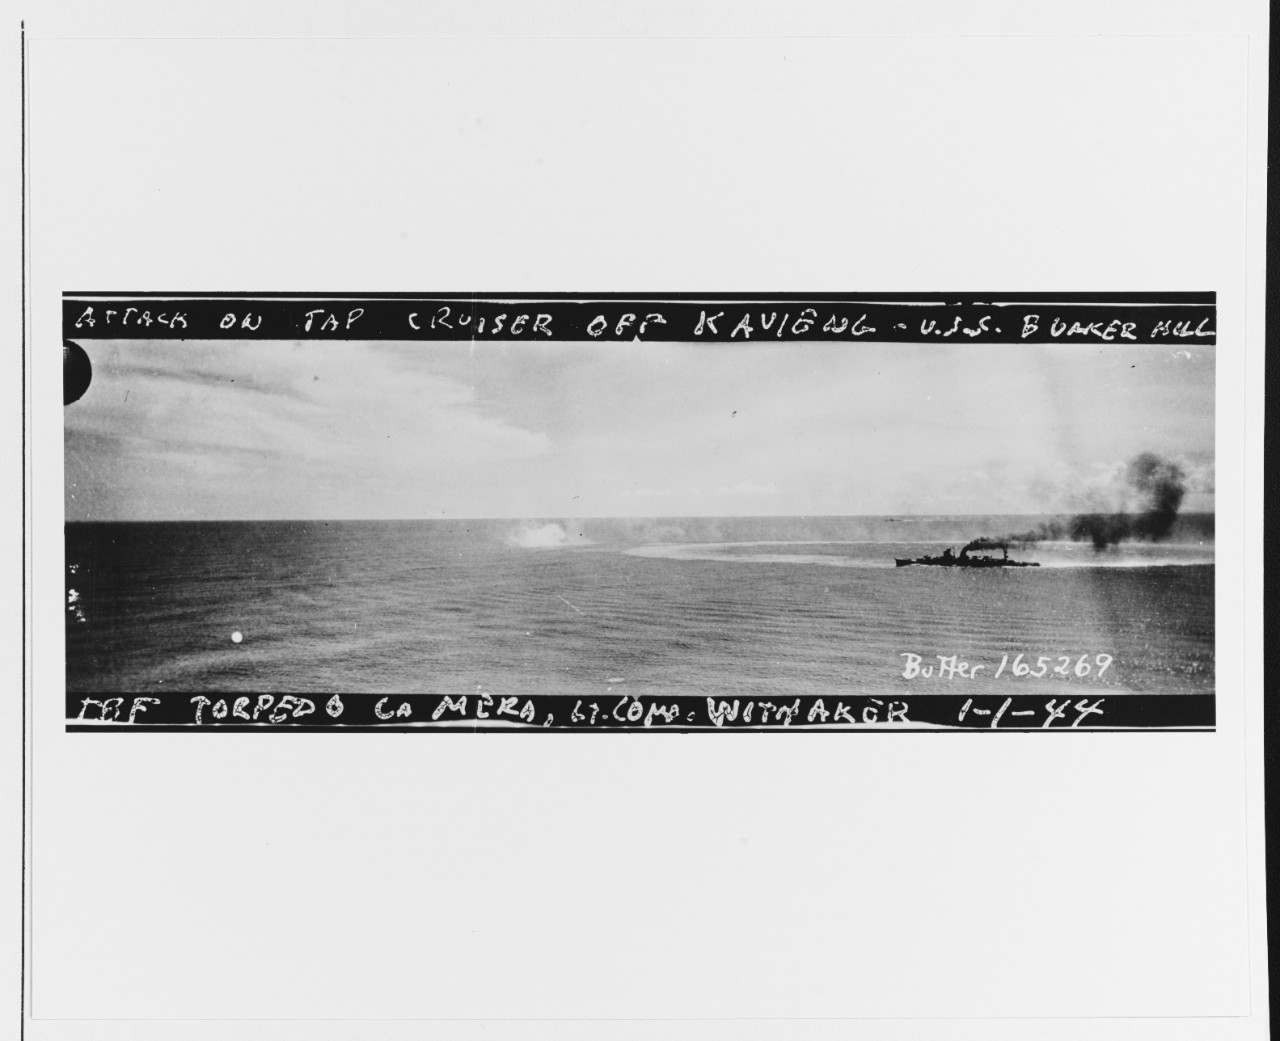 Japanese cruiser NOSHIRO under attack by USS BUNKER HILL (CV-17)